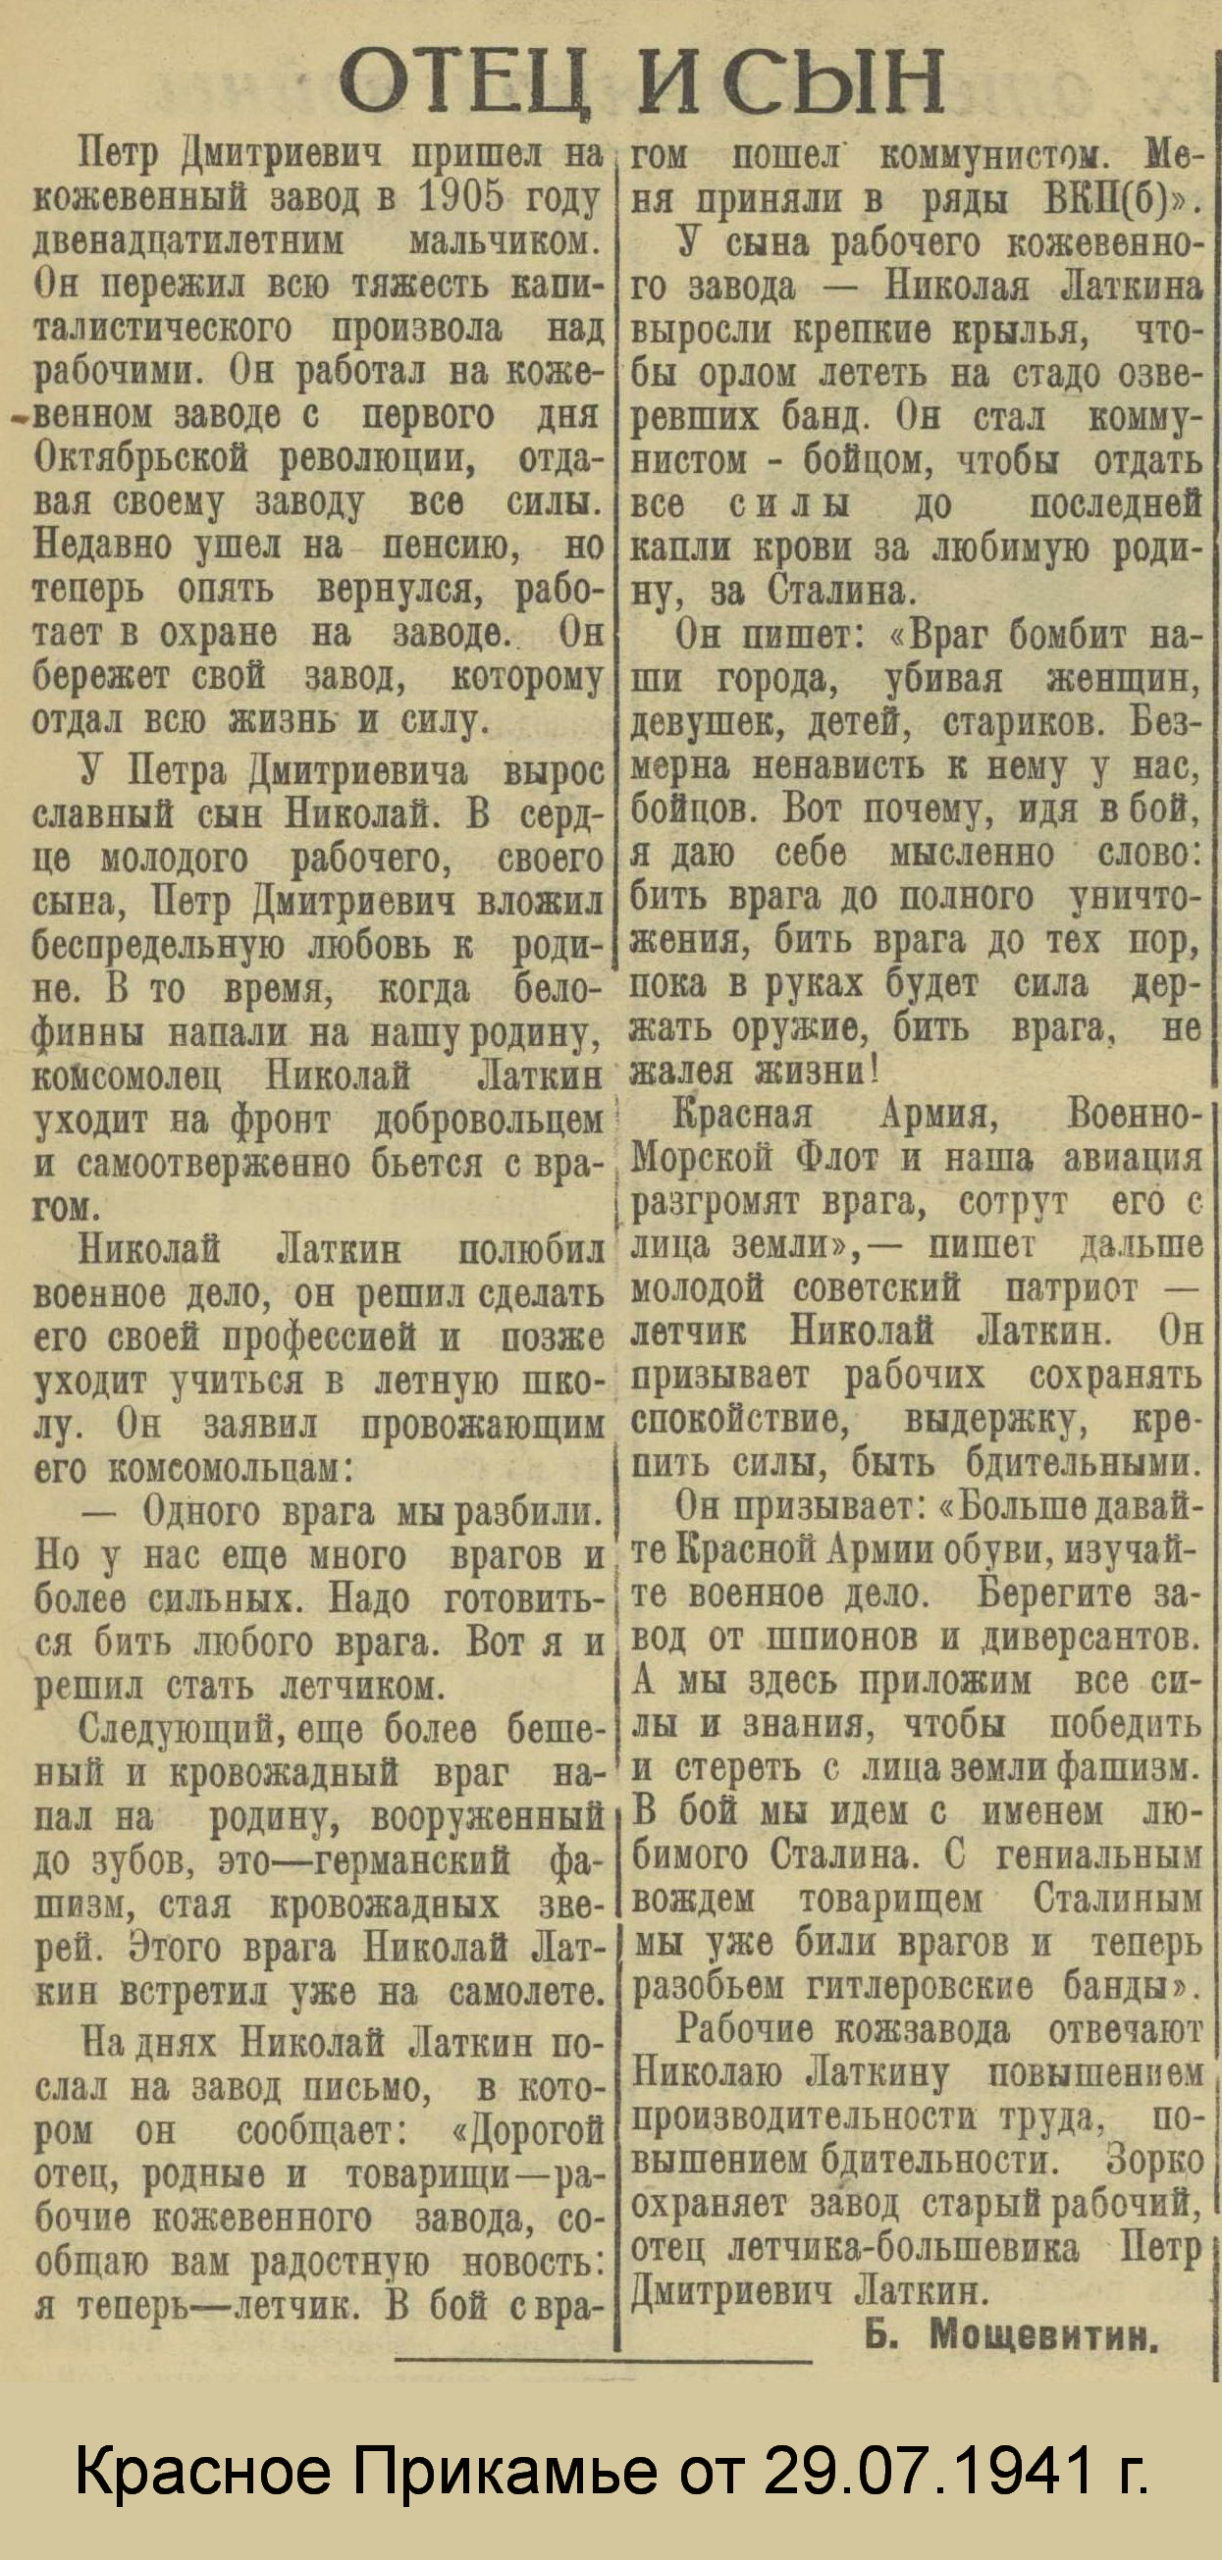 Красное Прикамье. - 1941. - 29 июля.